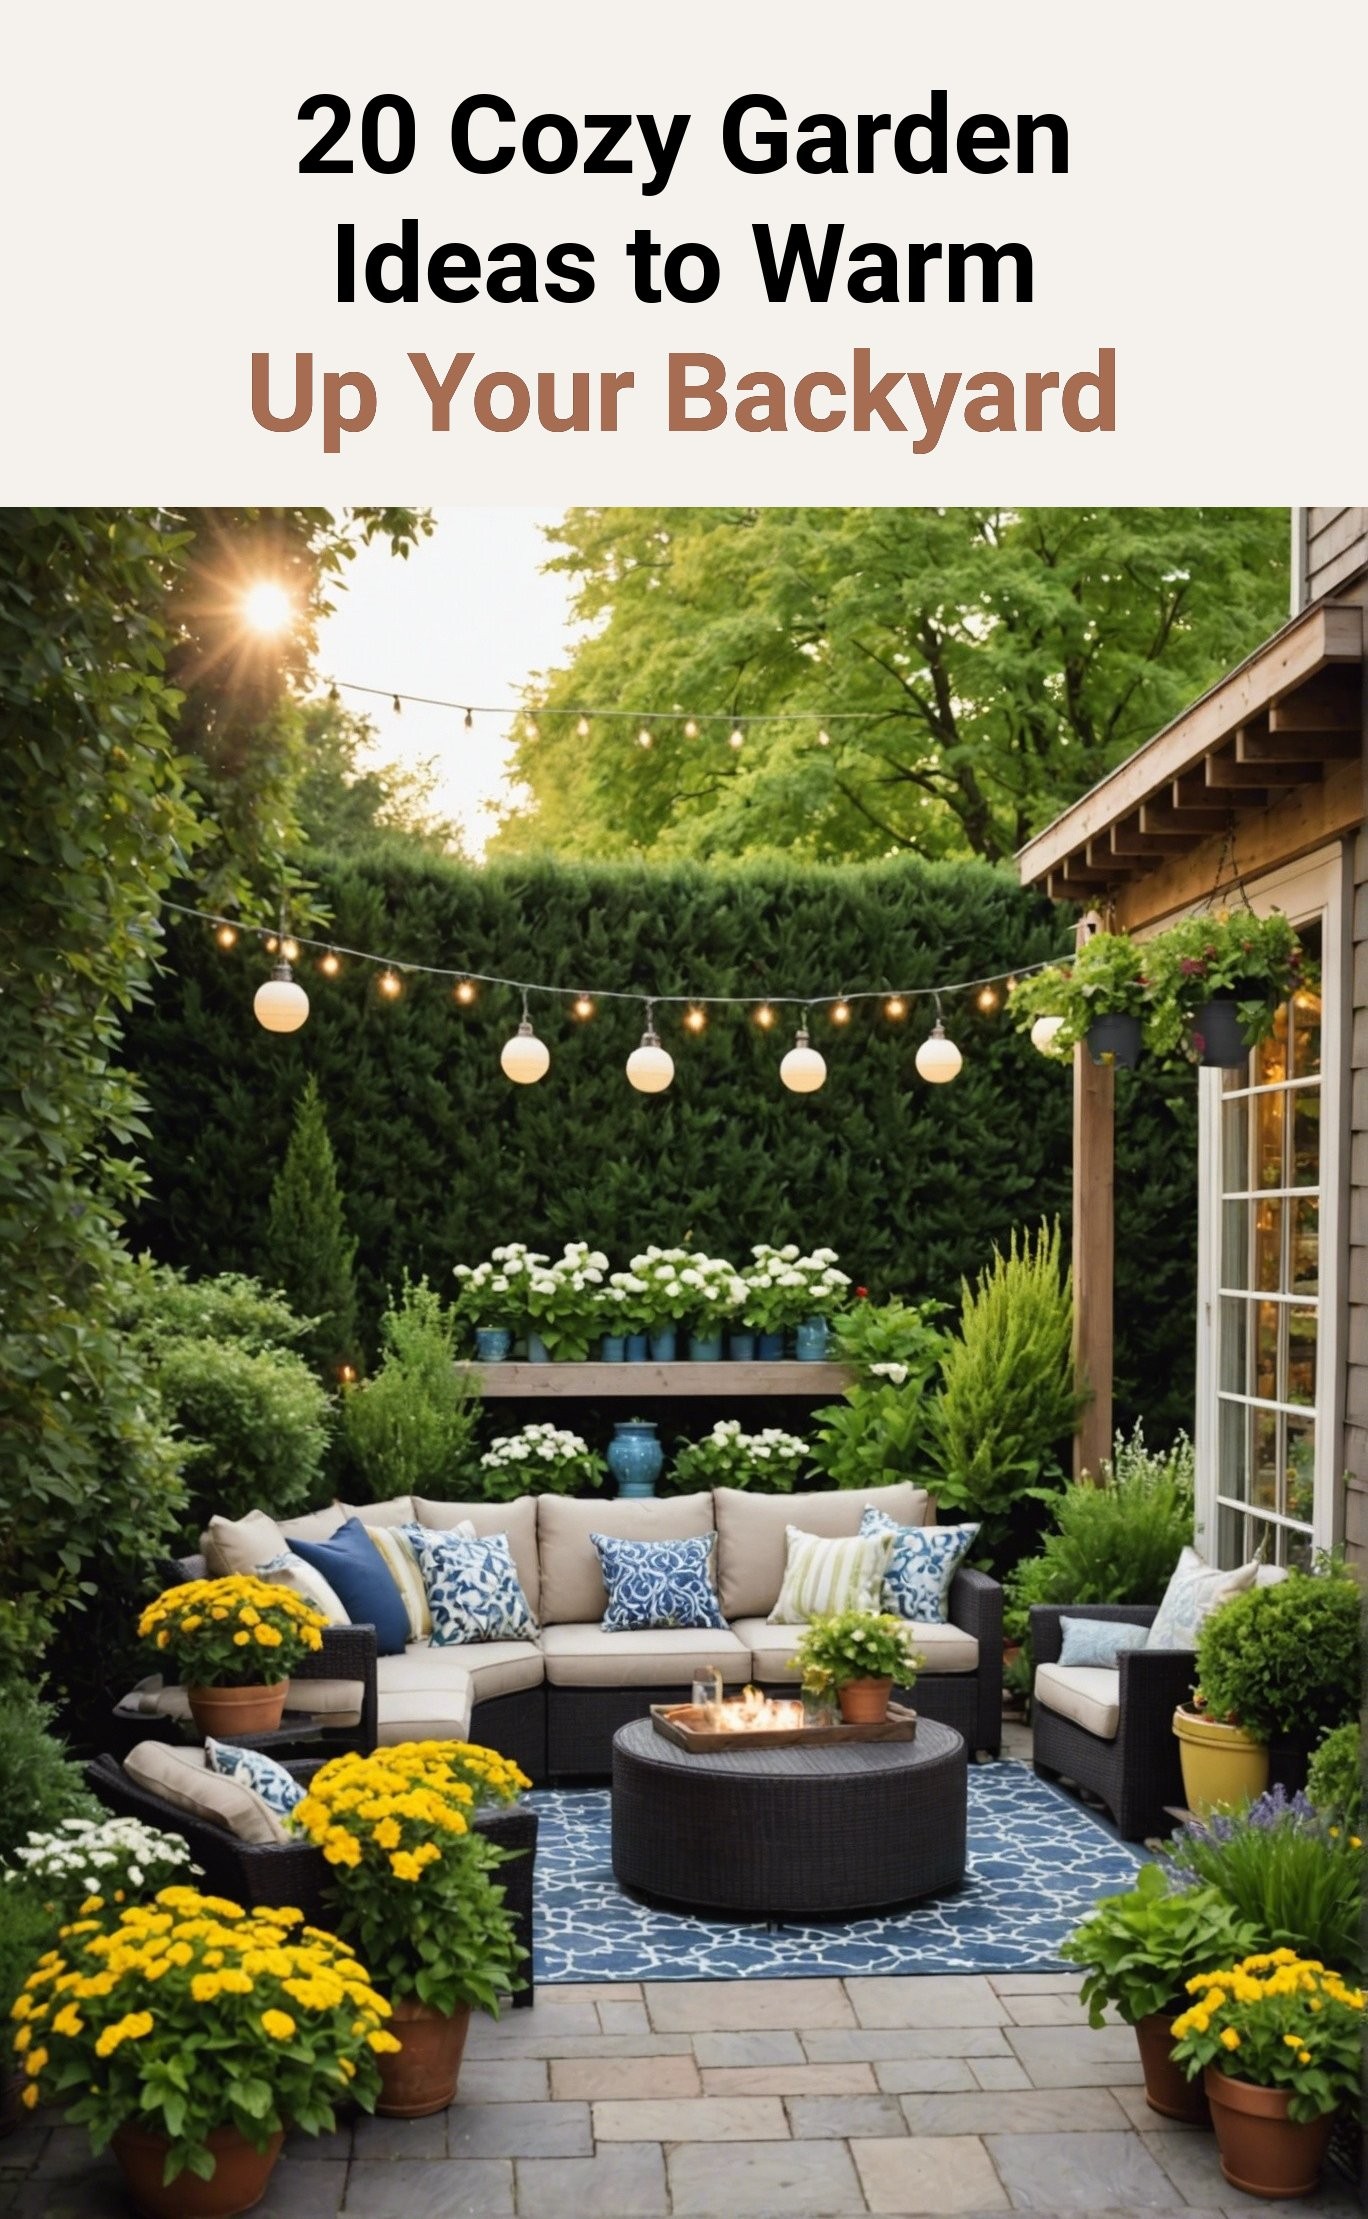 20 Cozy Garden Ideas to Warm Up Your Backyard